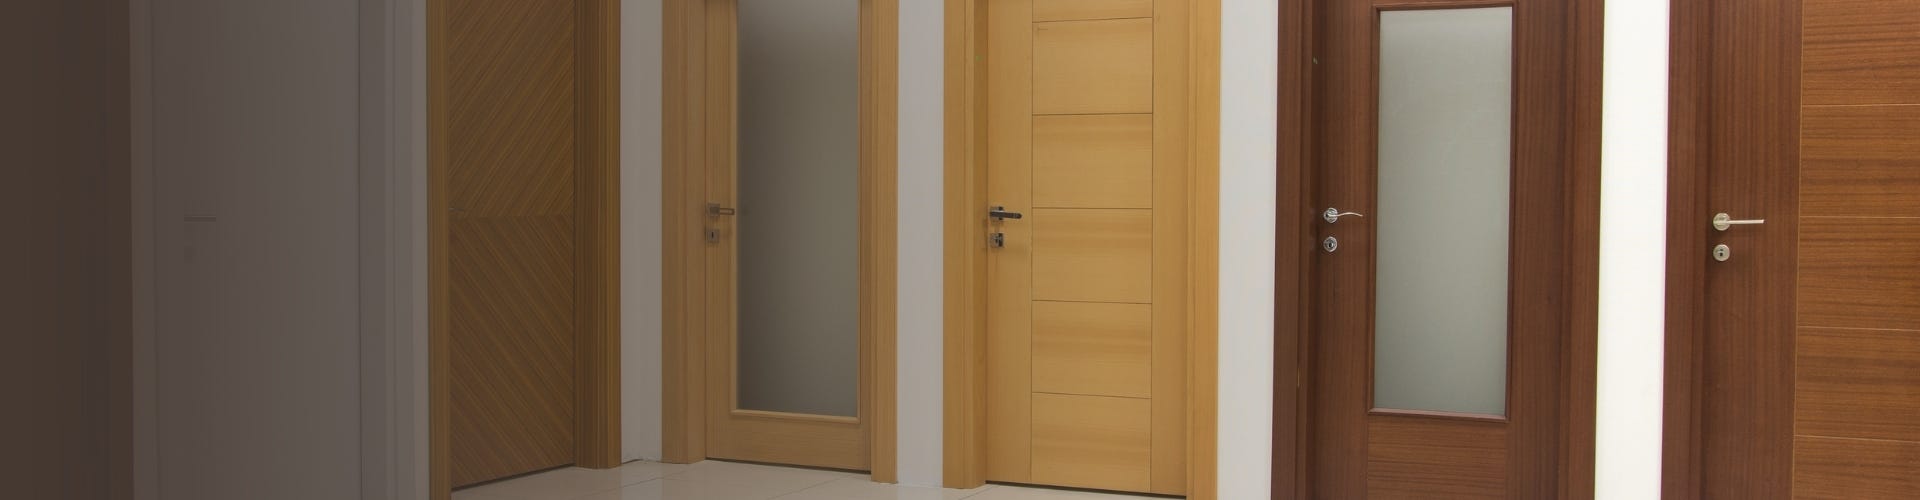 The best door hardware for wooden doors